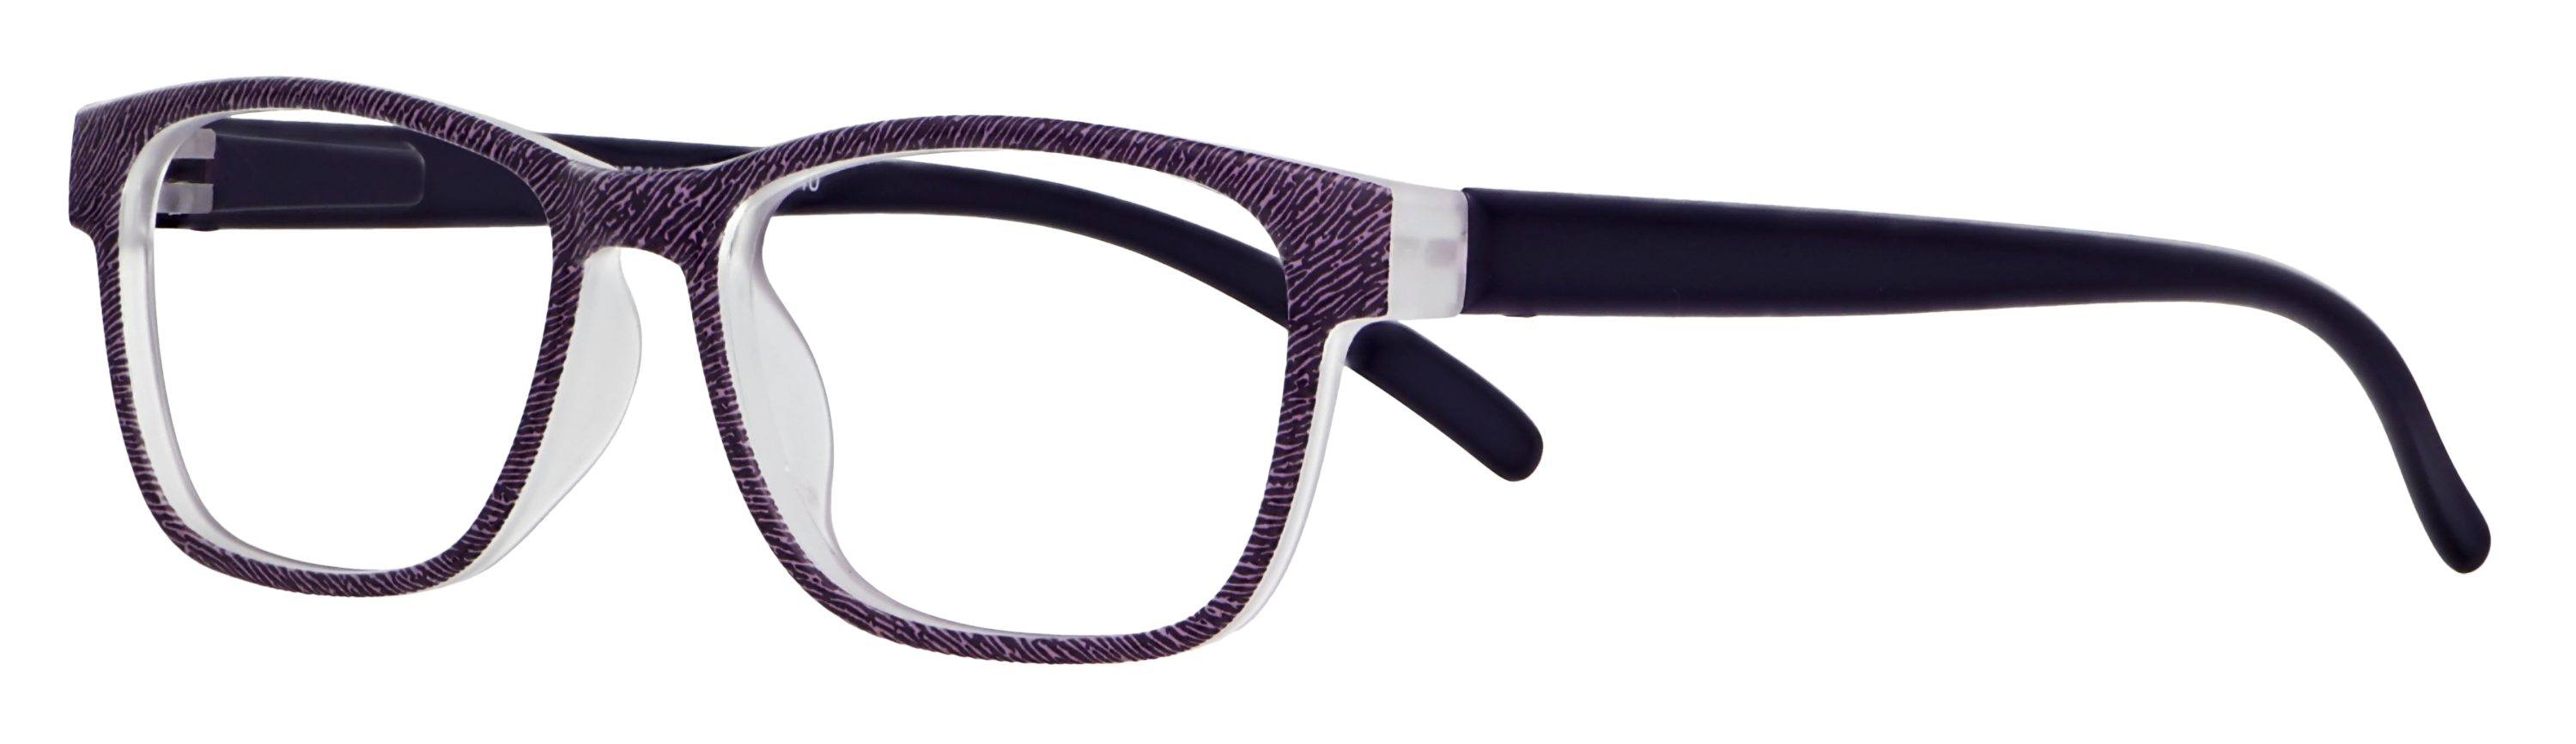 Das Bild zeigt die Fertiglesebrille 04561 von der Marke Abele Optik in lila matt.